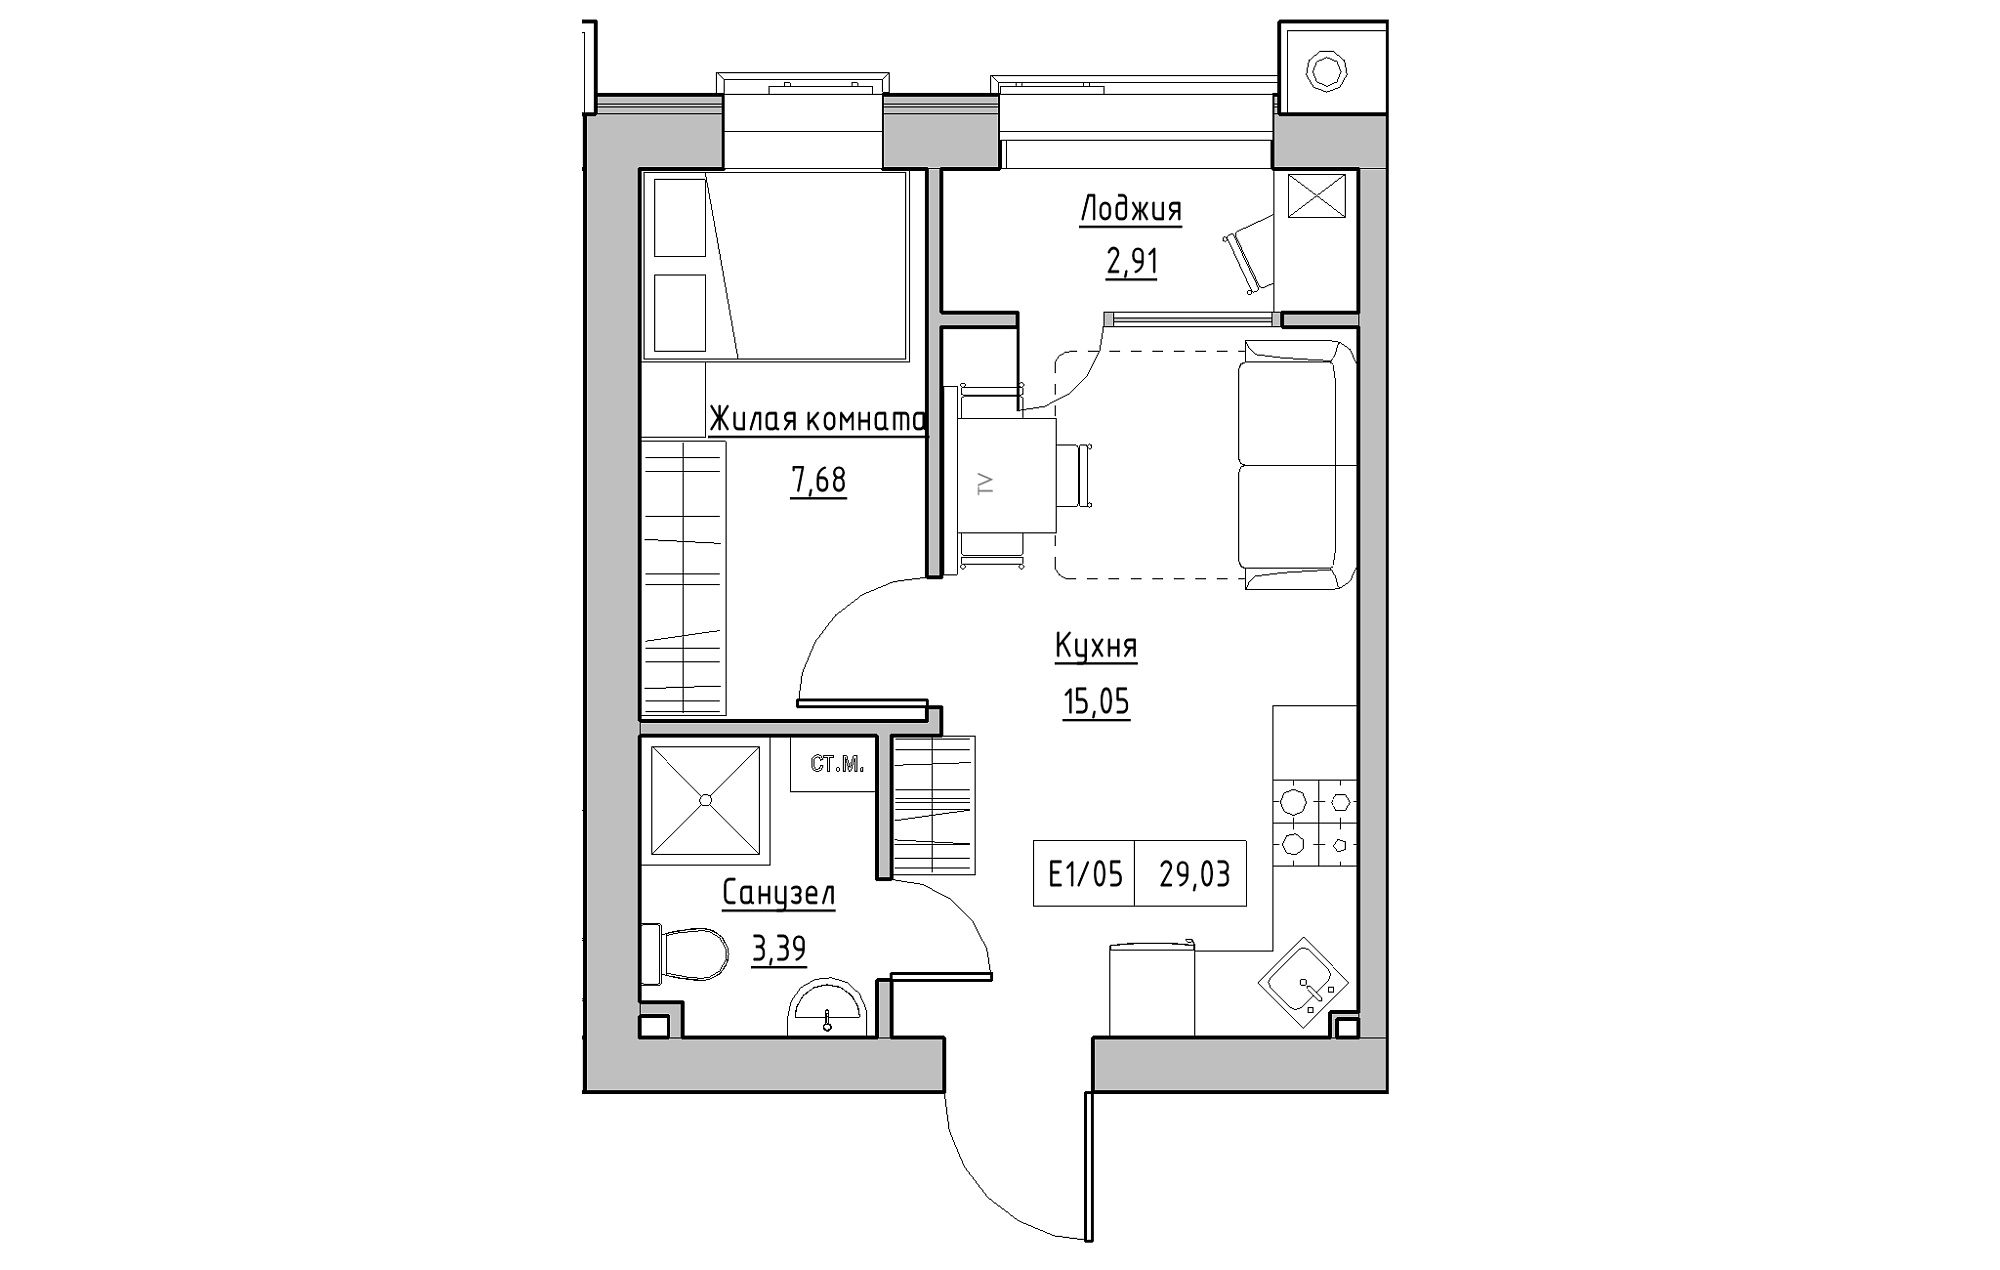 Планування 1-к квартира площею 29.03м2, KS-013-04/0007.